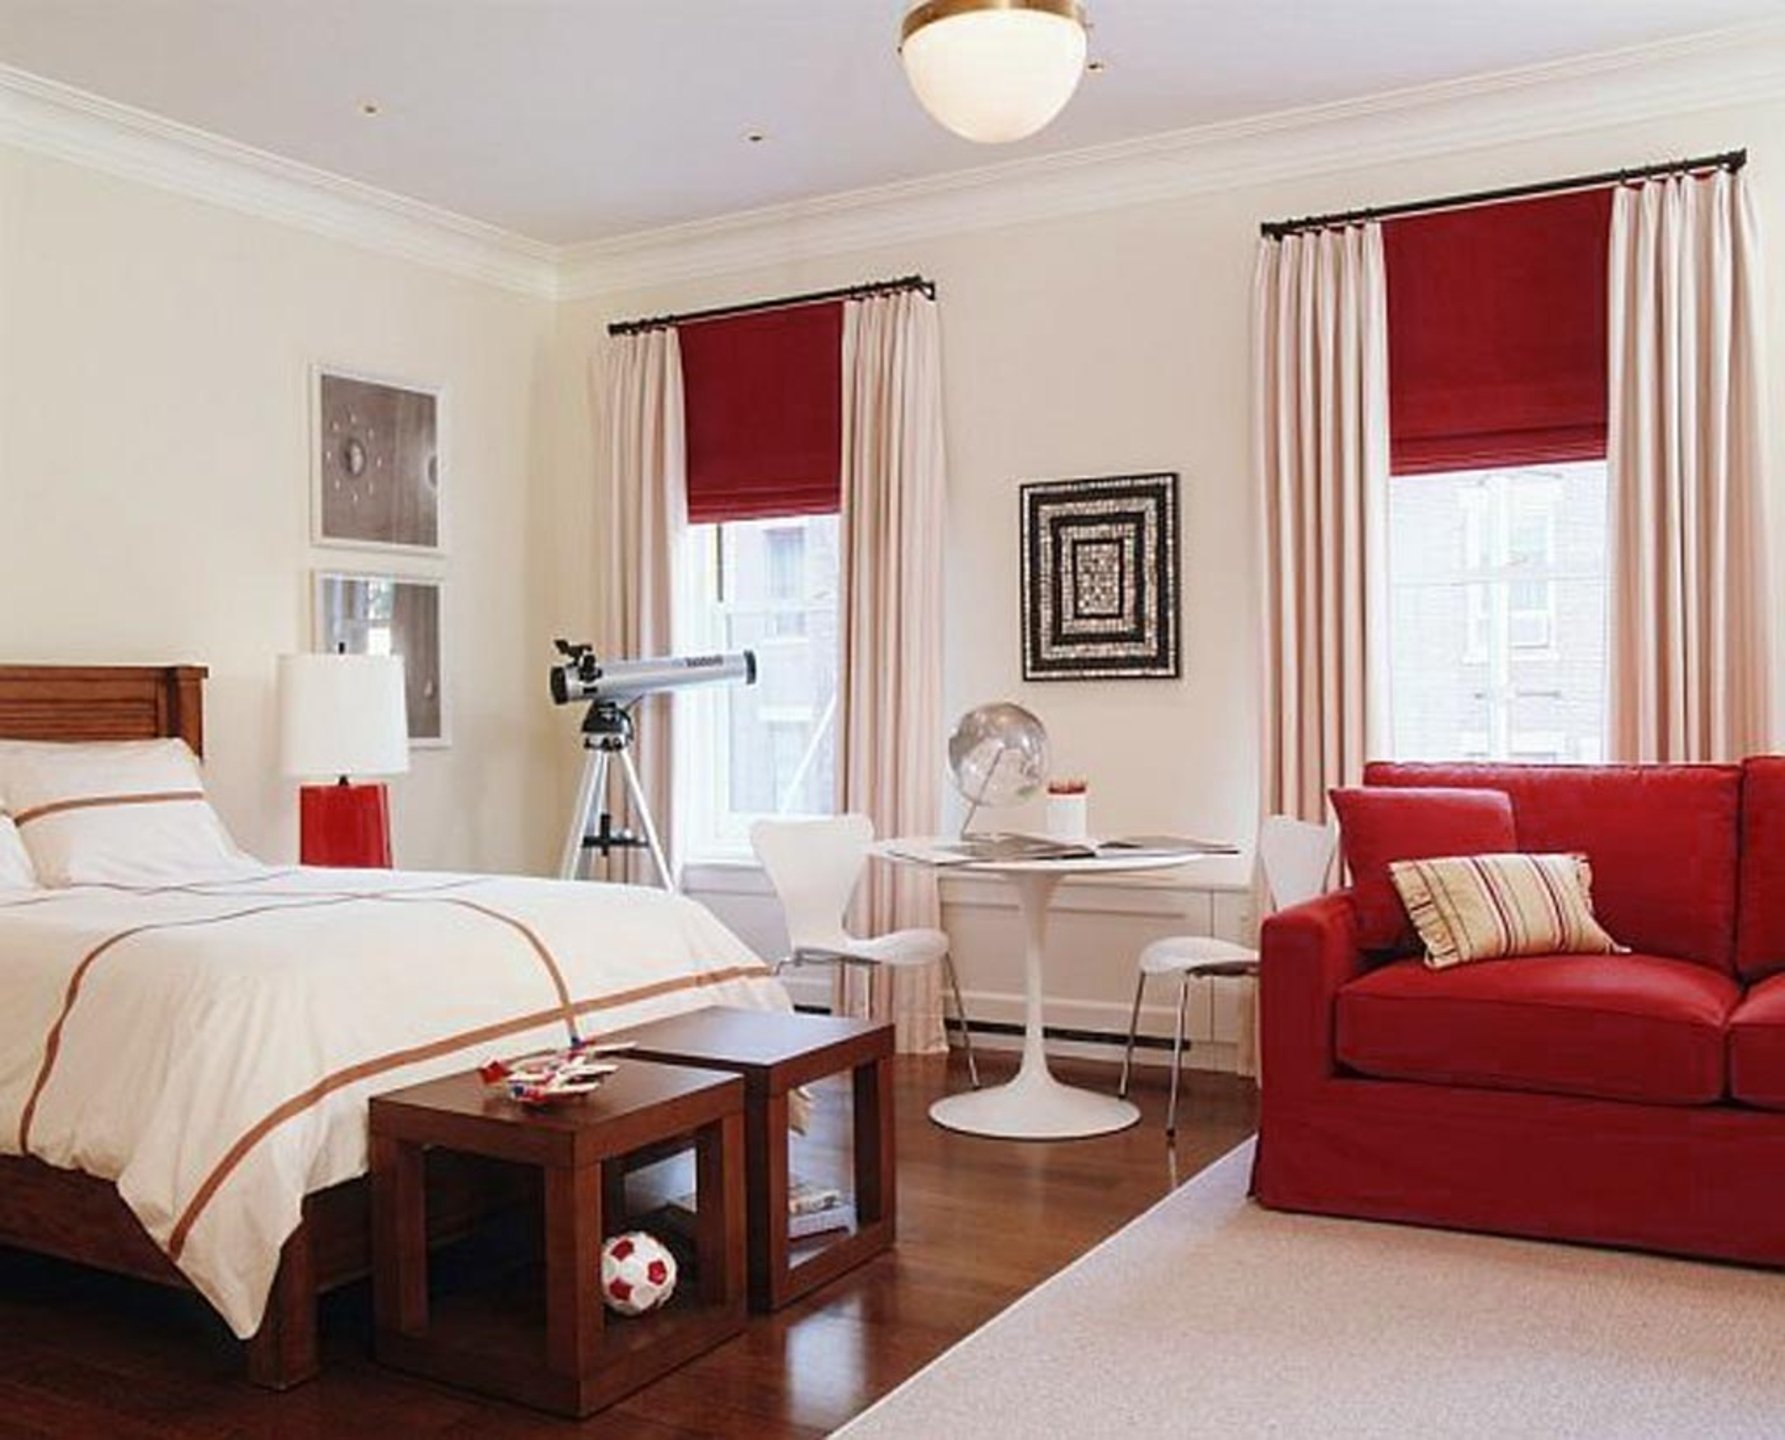 Комната с тремя окнами. Комната с двумя окнами. Спальня в красных тонах. Шторы в интерьере. Красный интерьер комнаты.